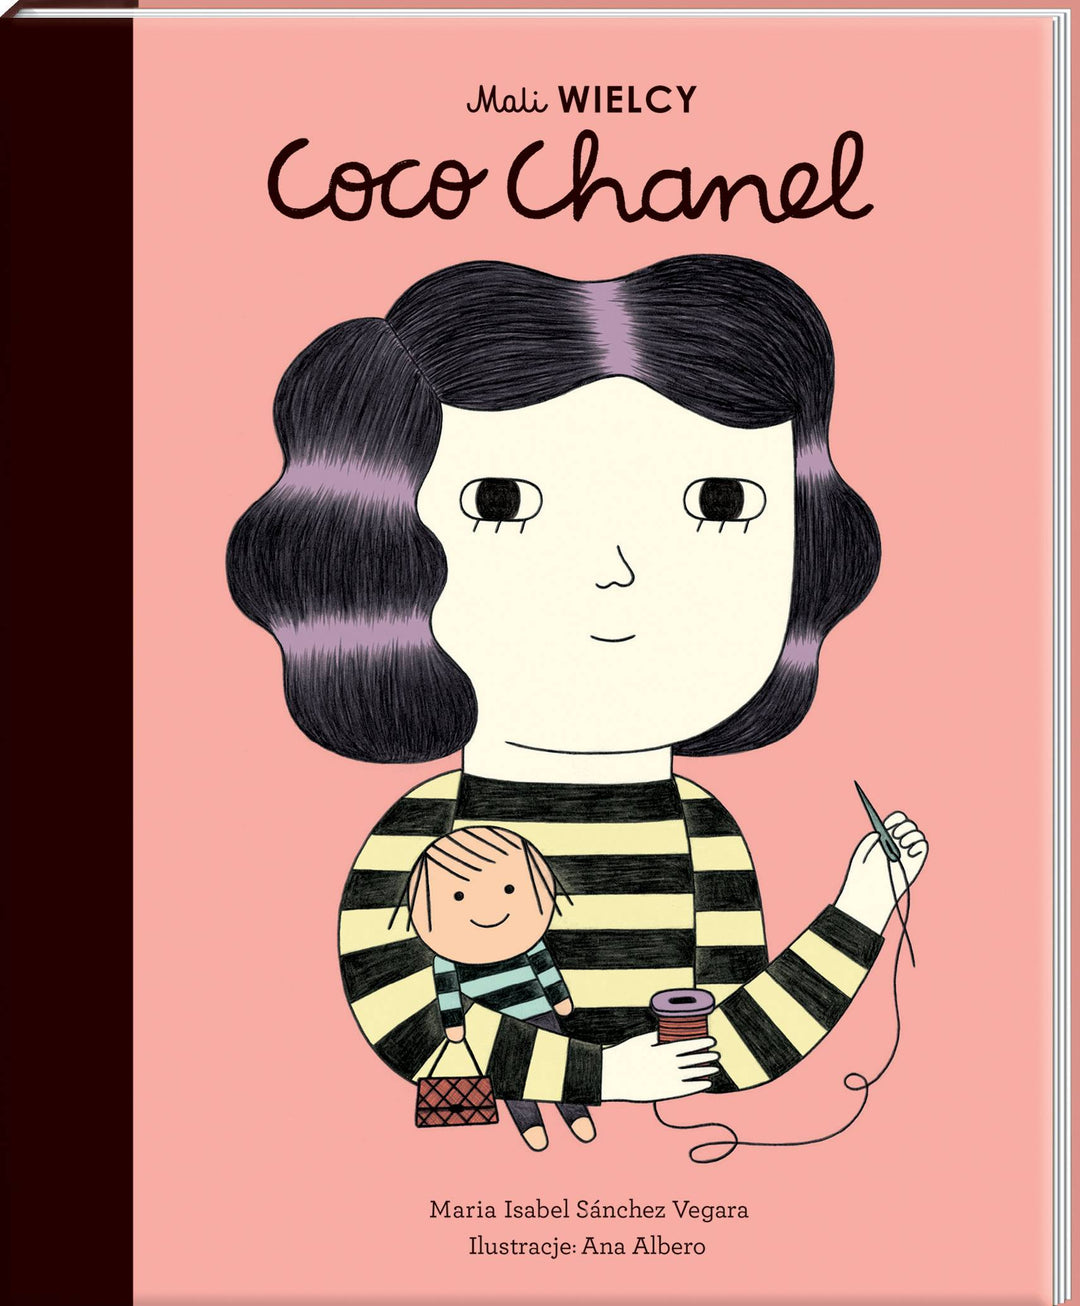 Smart Books Mali Wielcy Coco Chanel - 4kidspoint.pl